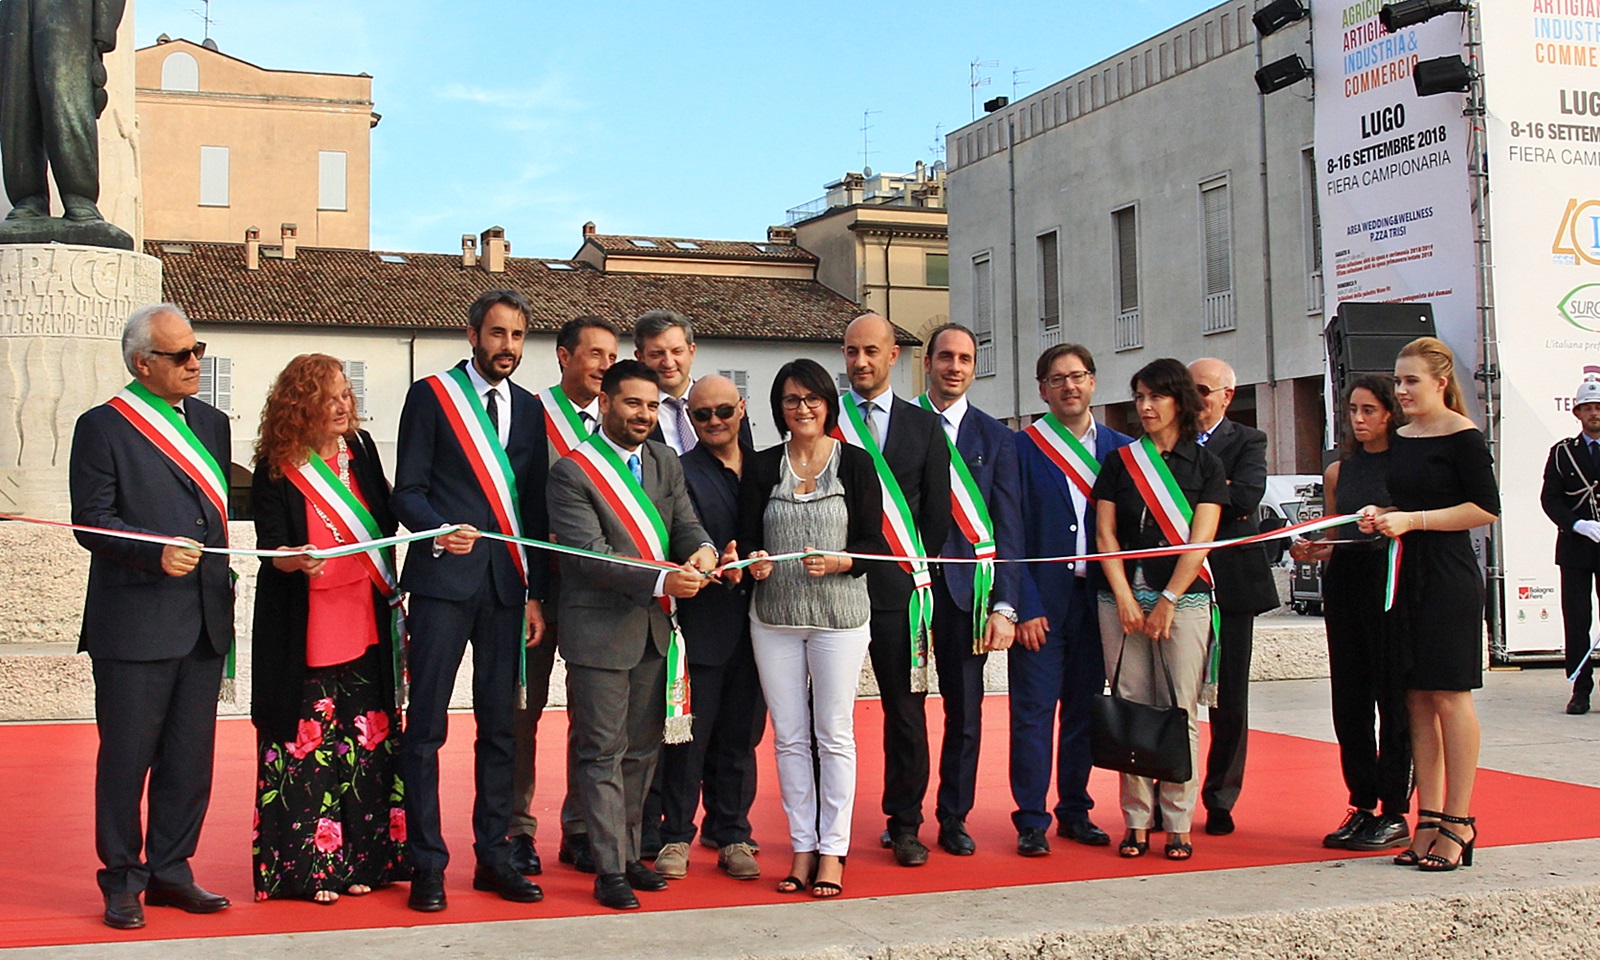 Inaugurata a Lugo Bassa Romagna in Fiera